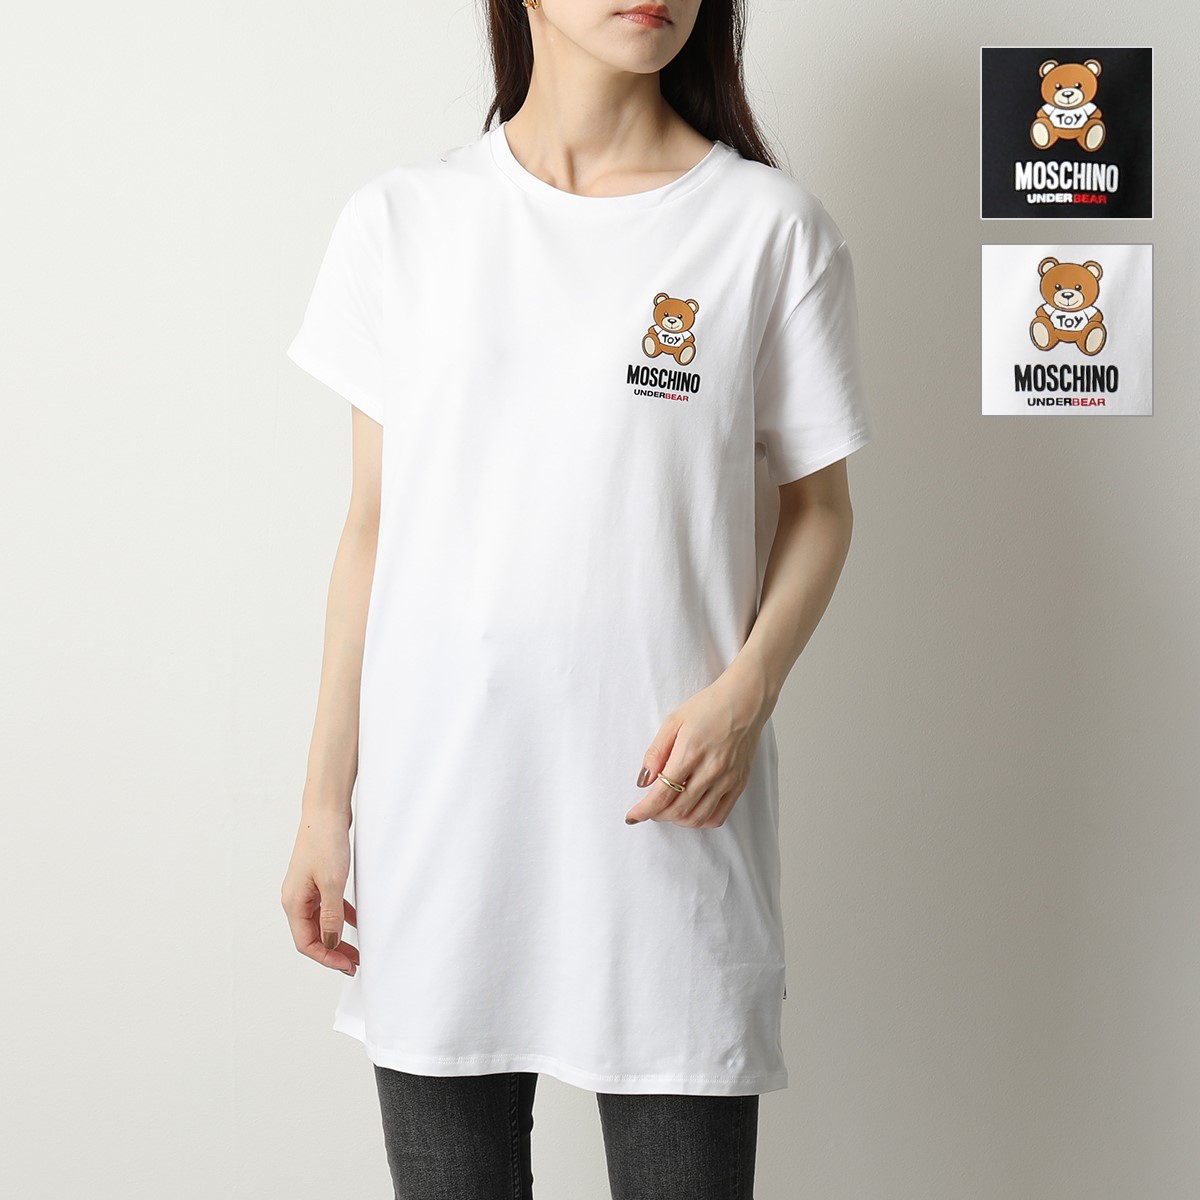 のサイズ 【新品】MOSCHINO モスキーノ ホワイト Tシャツ ワンピース 40 コットン